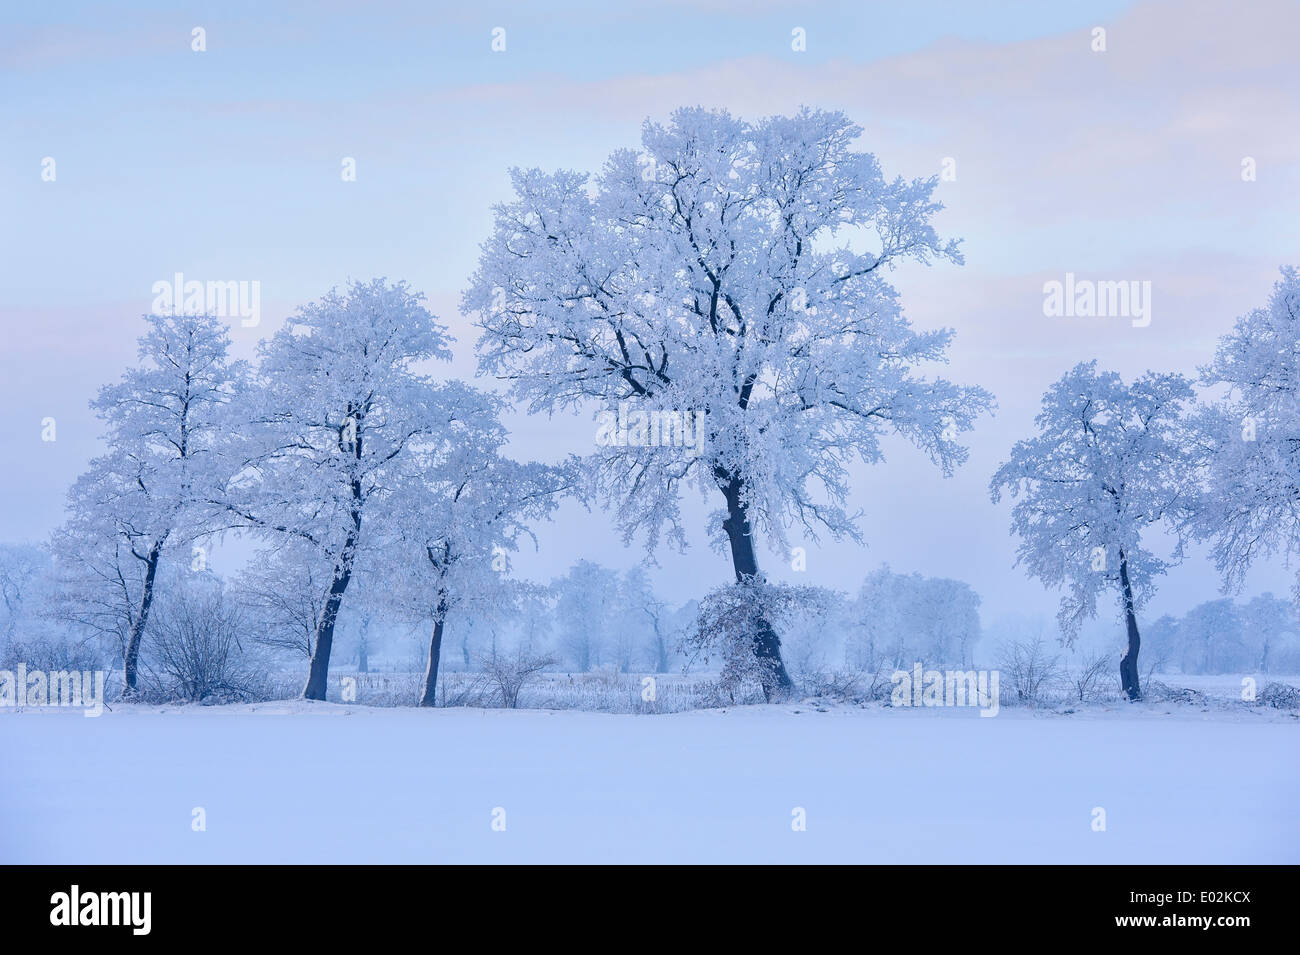 oaks in winter, vechta district, niedersachsen, germany Stock Photo